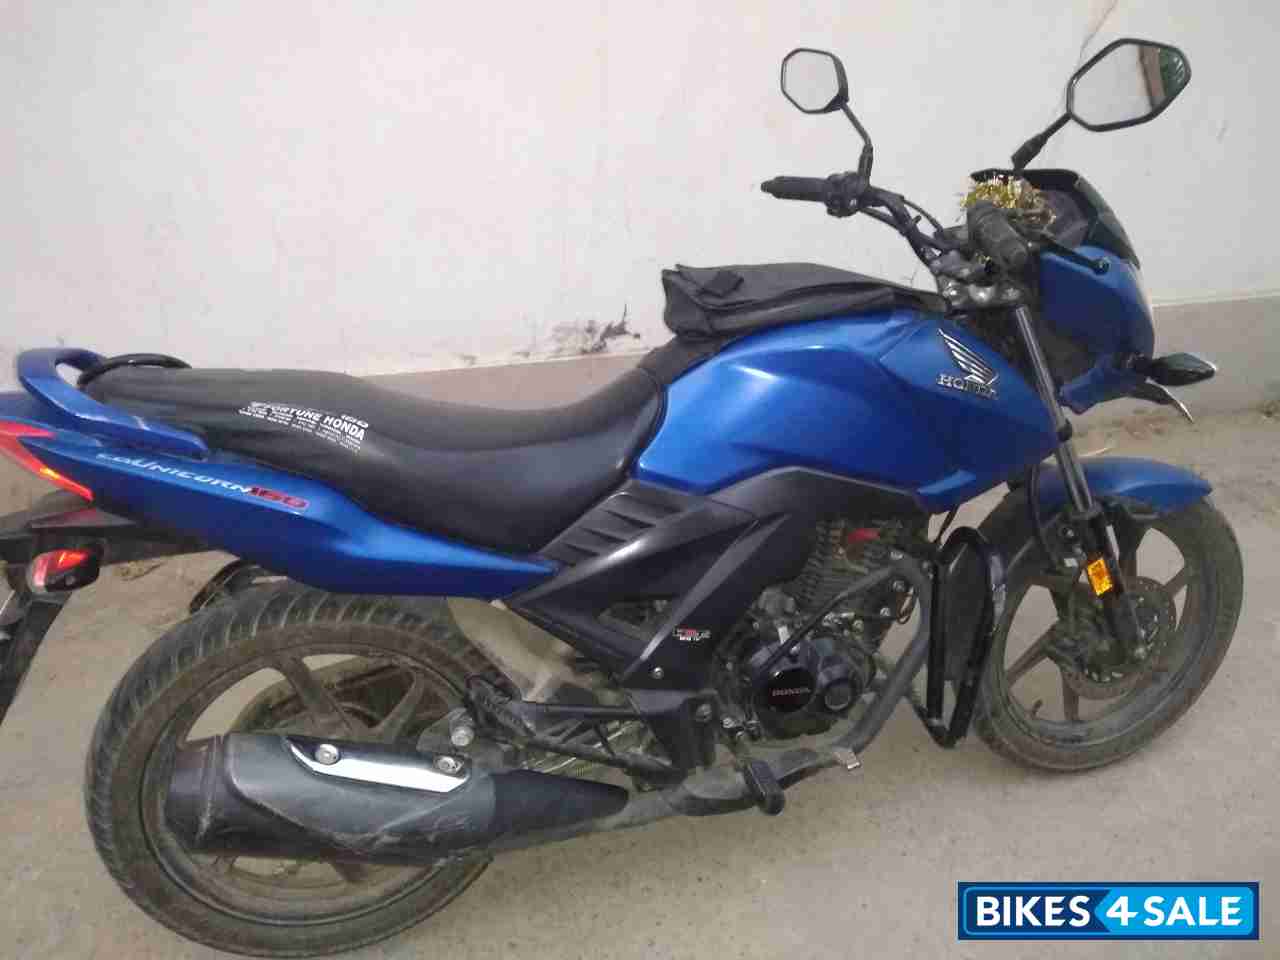 Used 2017 Model Honda Cb Unicorn 160 For Sale In Hyderabad Id 263631 Matte Blue Colour Bikes4sale